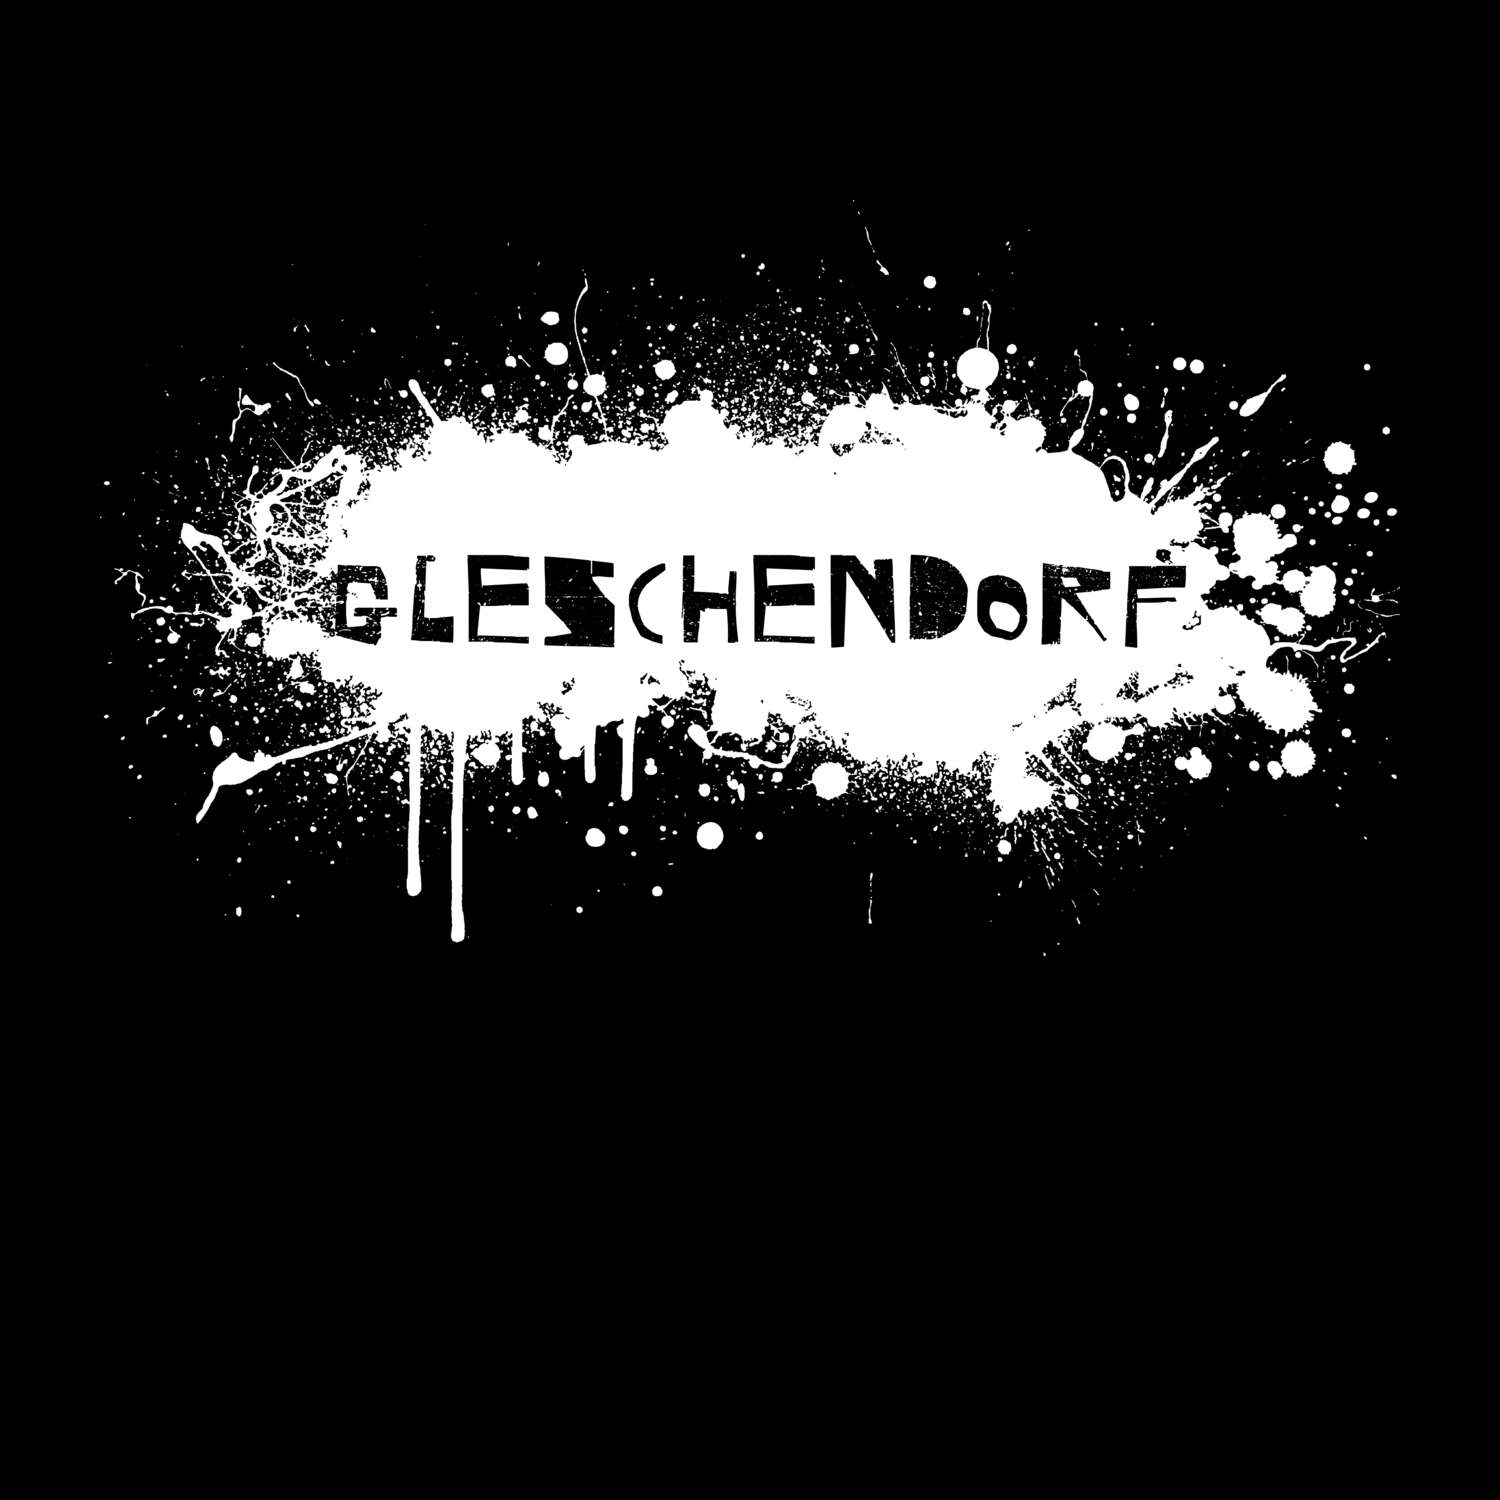 Gleschendorf T-Shirt »Paint Splash Punk«